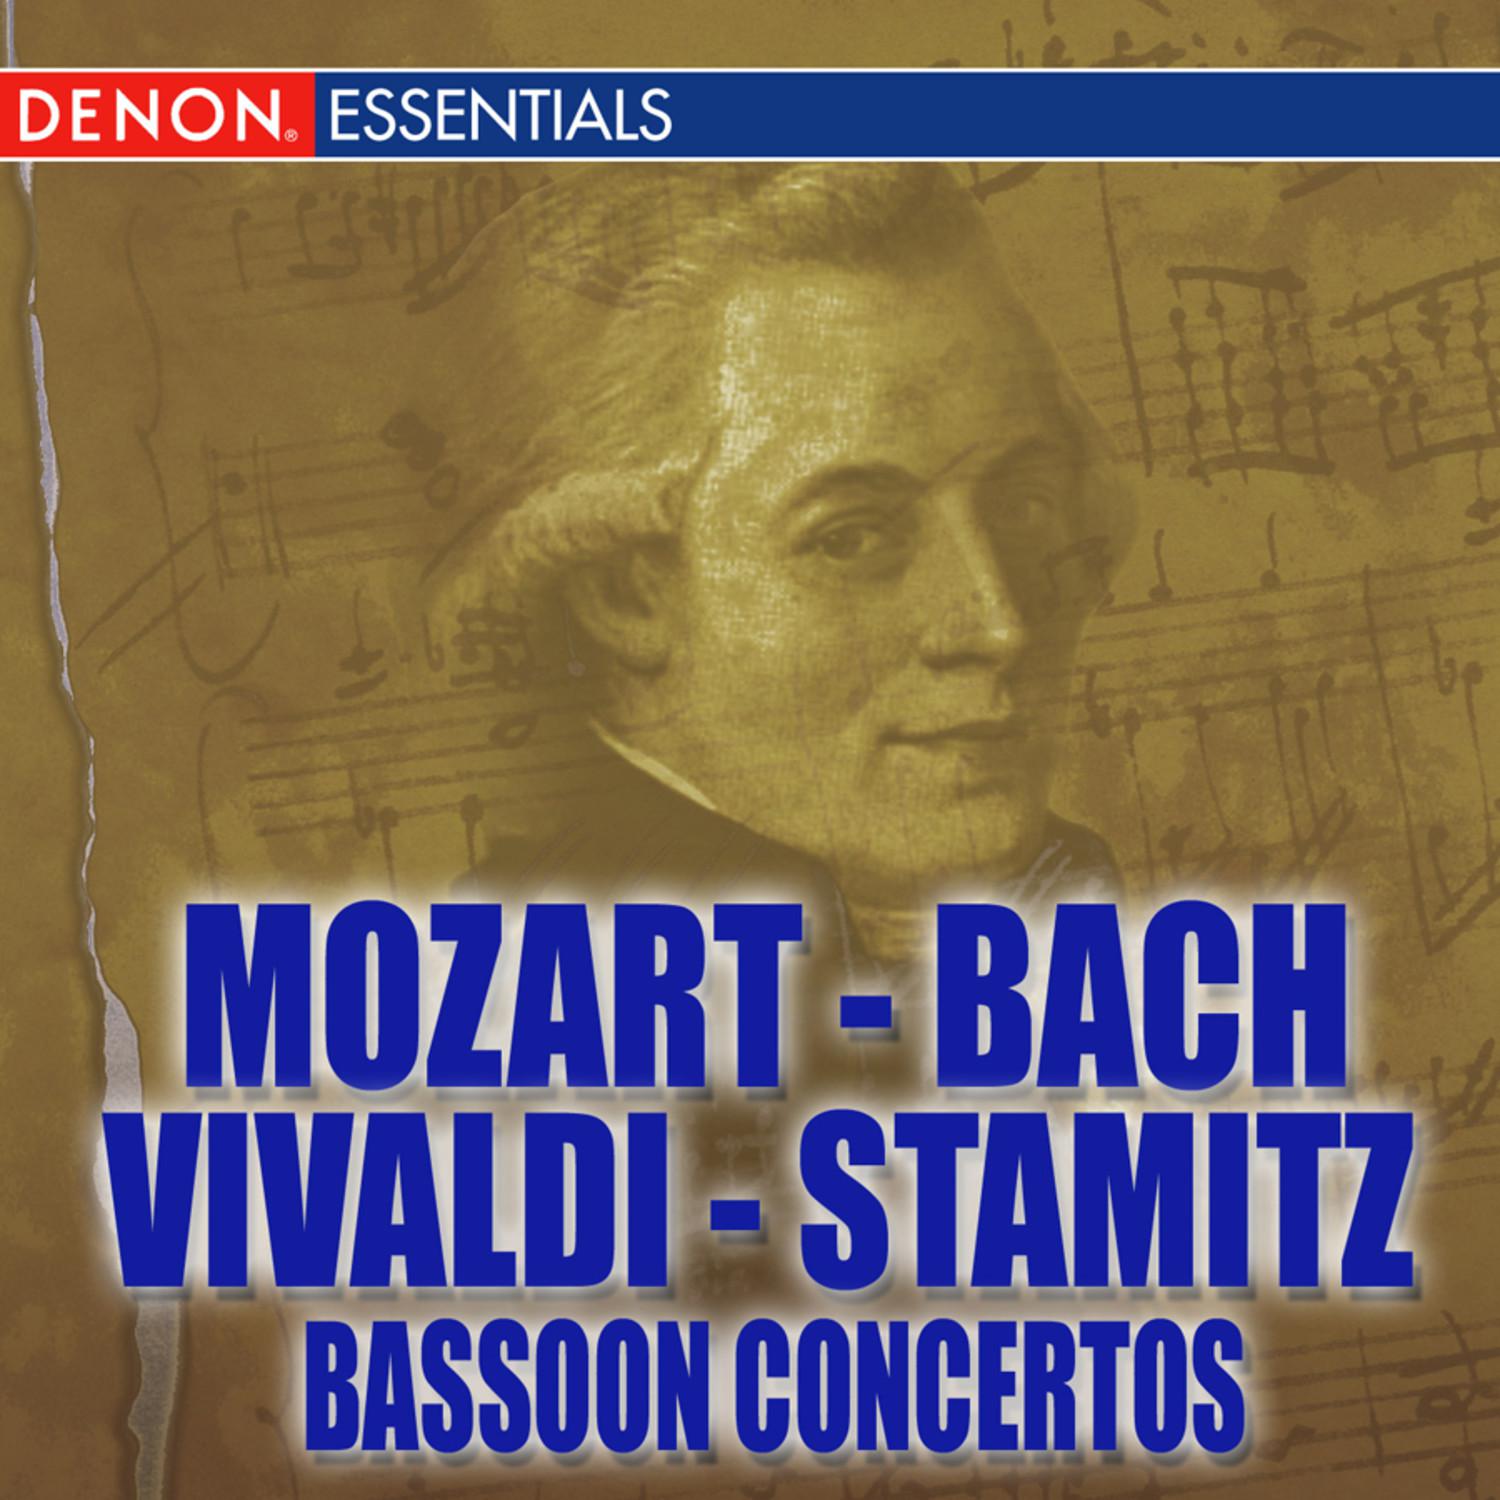 Concerto for Bassoon and Orchestra in E-Sharp Major: I. Allegro moderato